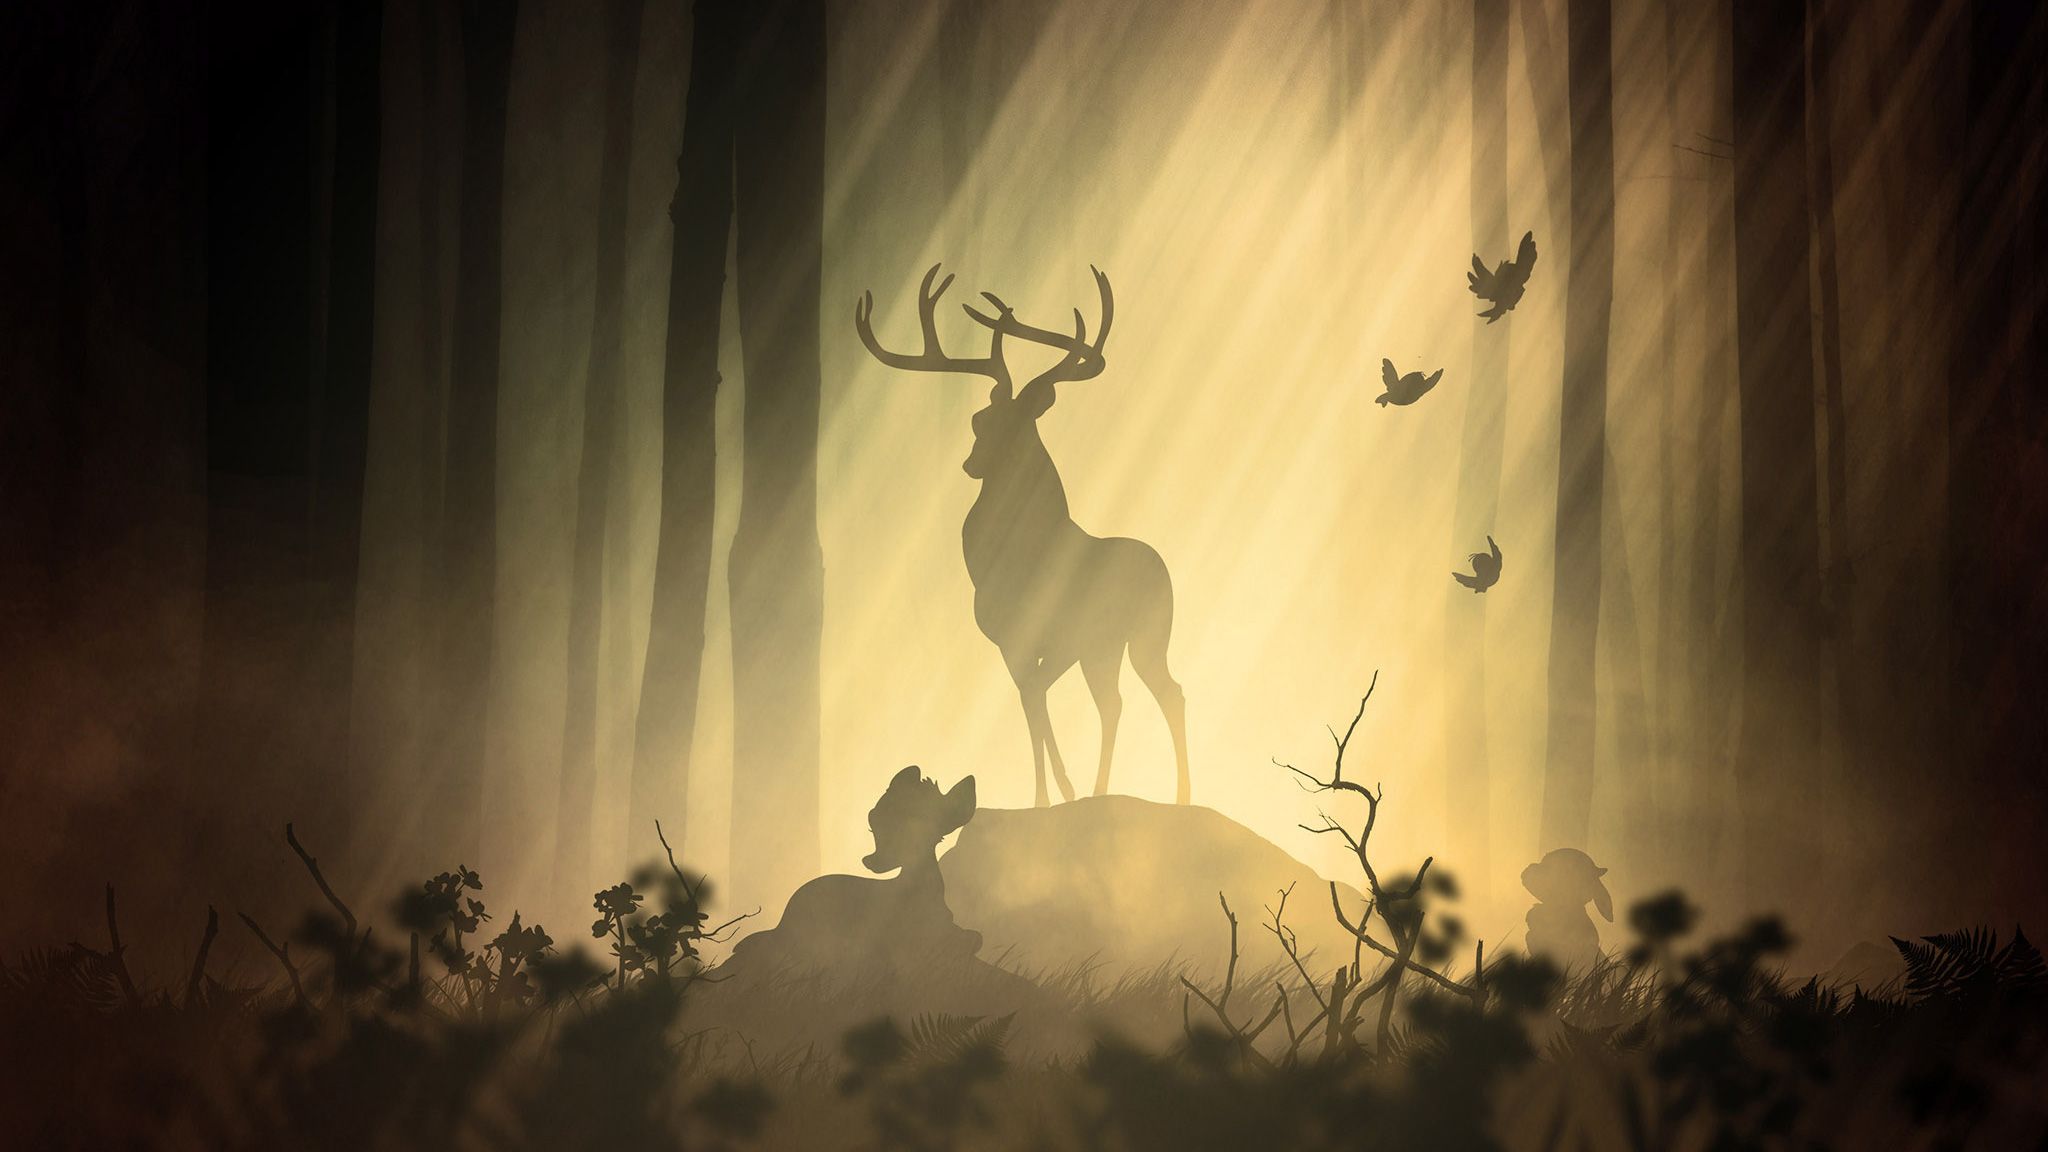 Deer Fantasy Forest, HD Artist, 4k Wallpaper, Image, Background